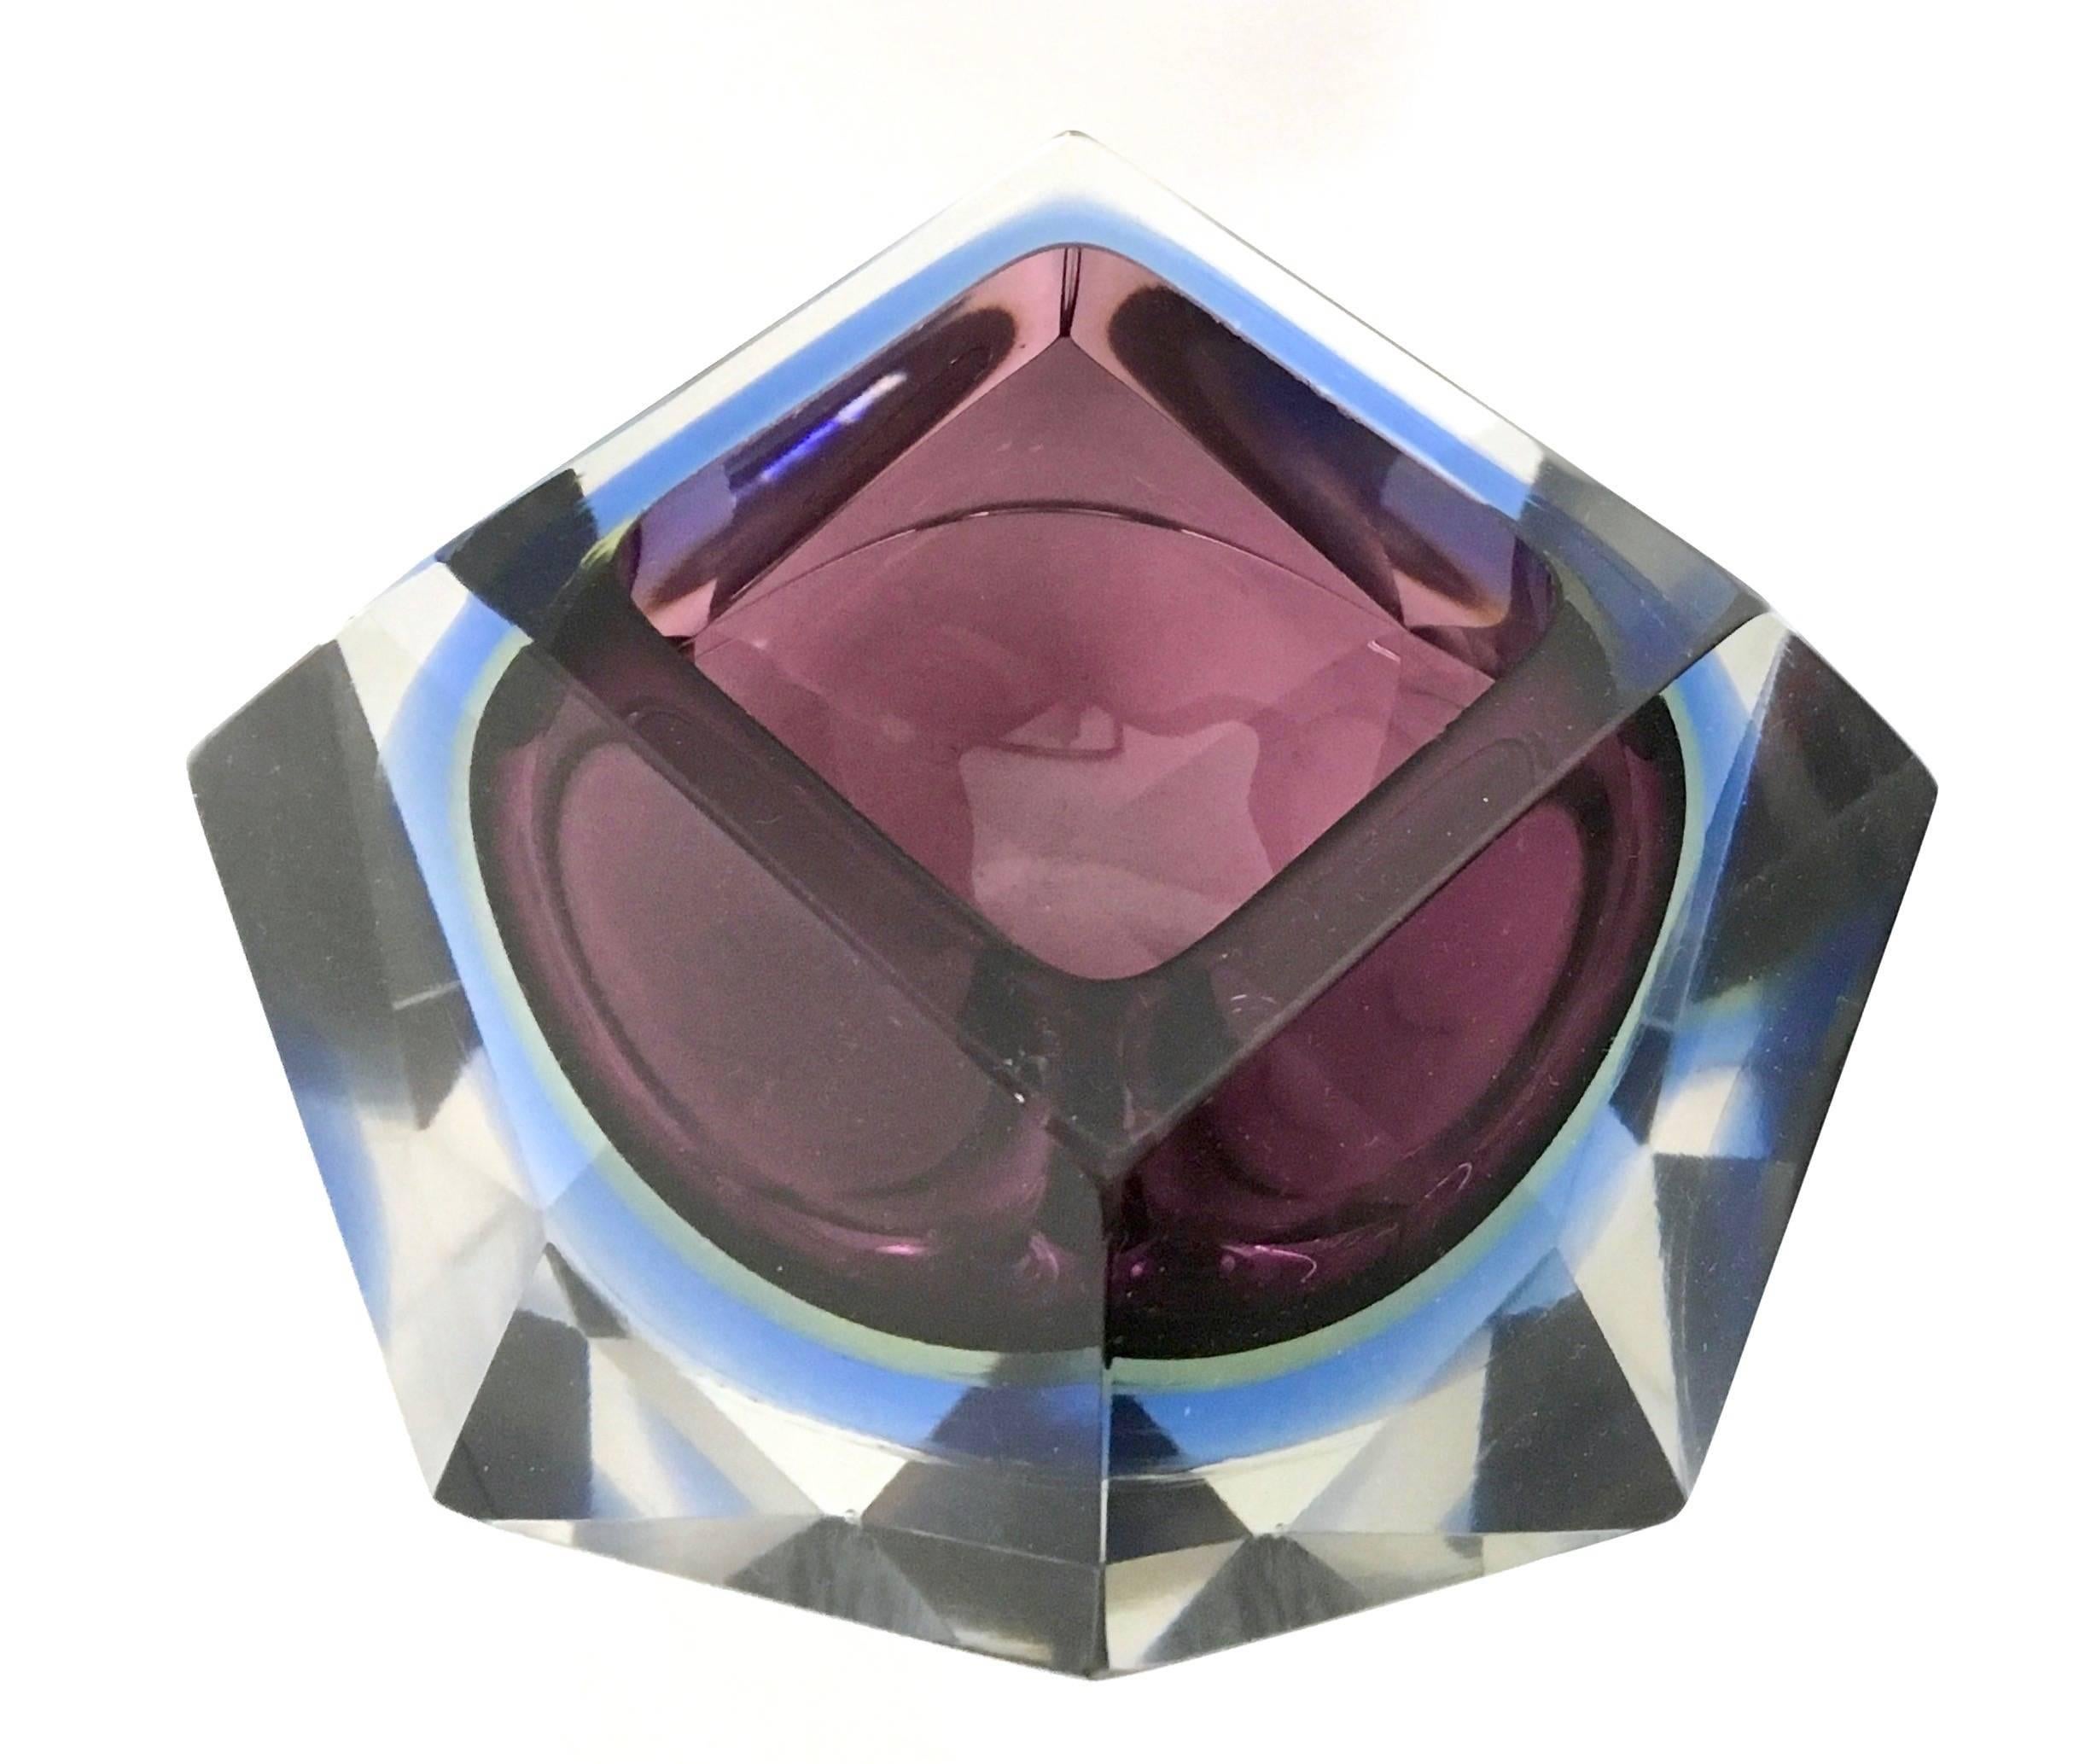 Italian Diamond Shaped Sommerso Glass Ashtray or Catchall by Flavio Poli, Italy, 1960s